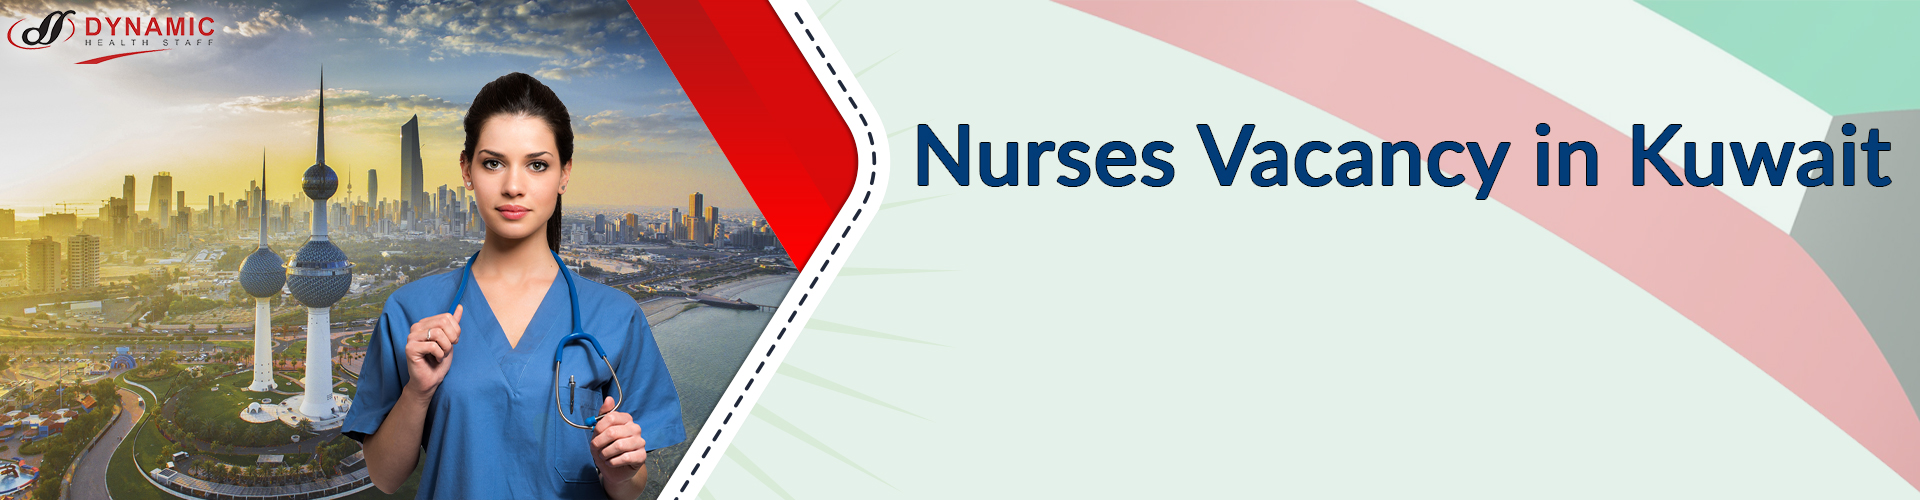 Nurses Vacancy in Kuwait